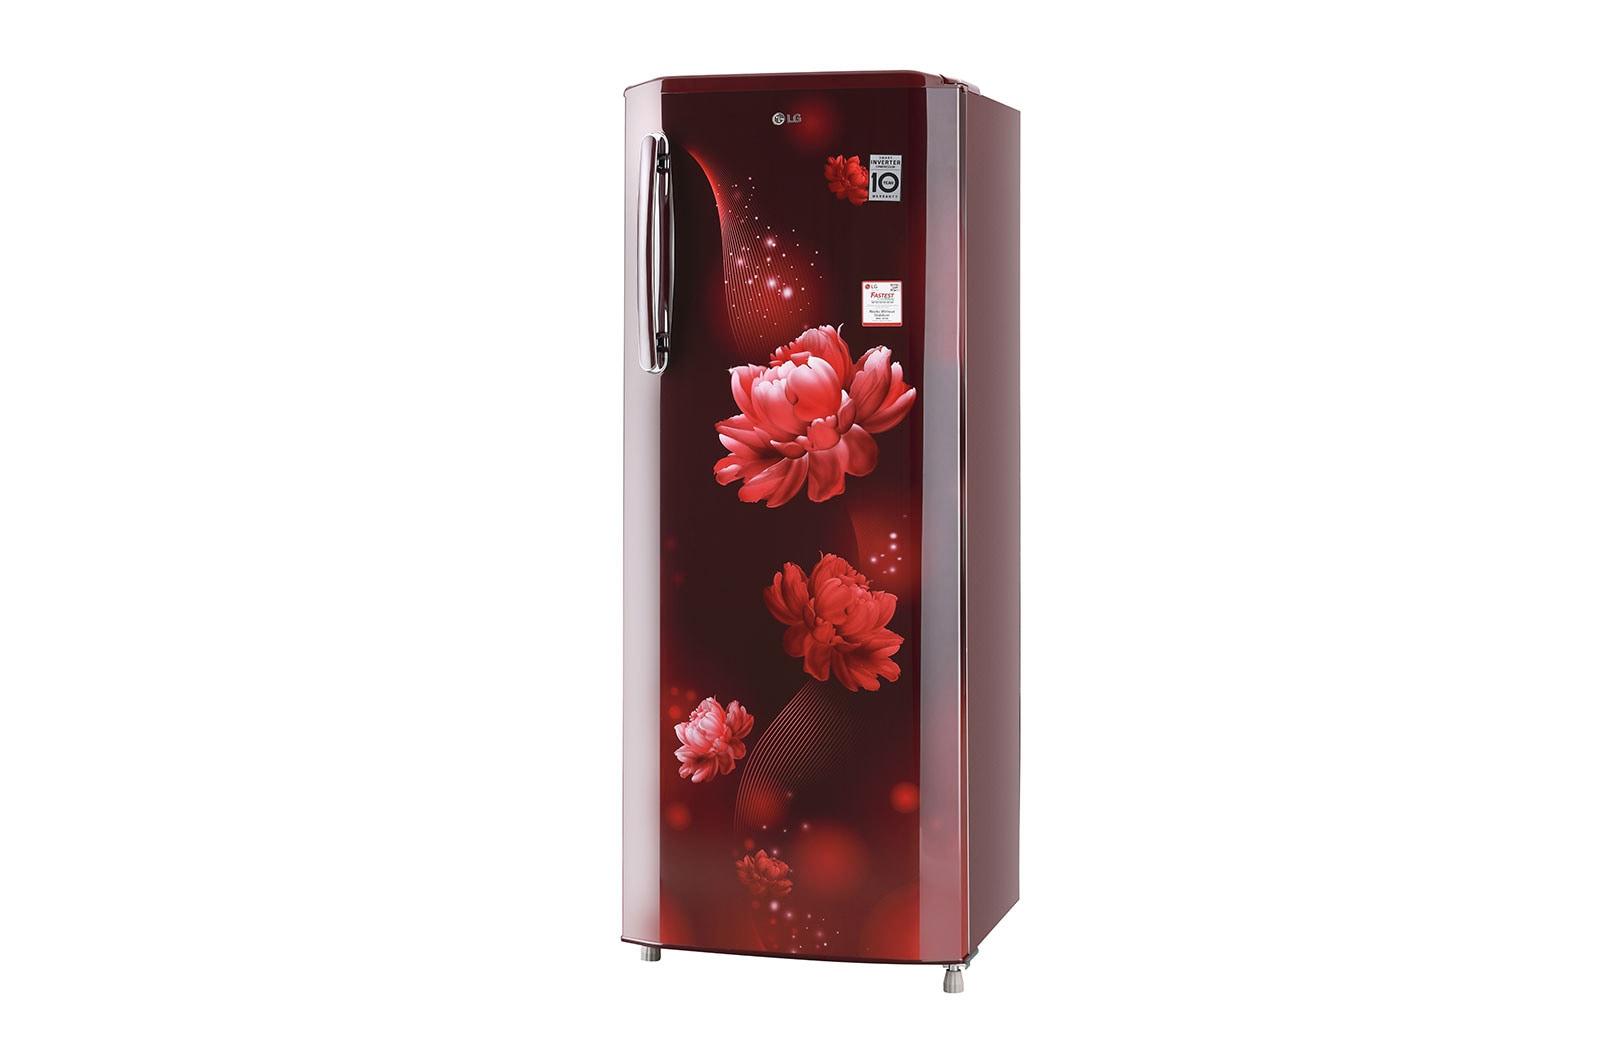 LG 270 L Single Door Refrigerator with Smart Inverter Compressor in Scarlet Charm Color